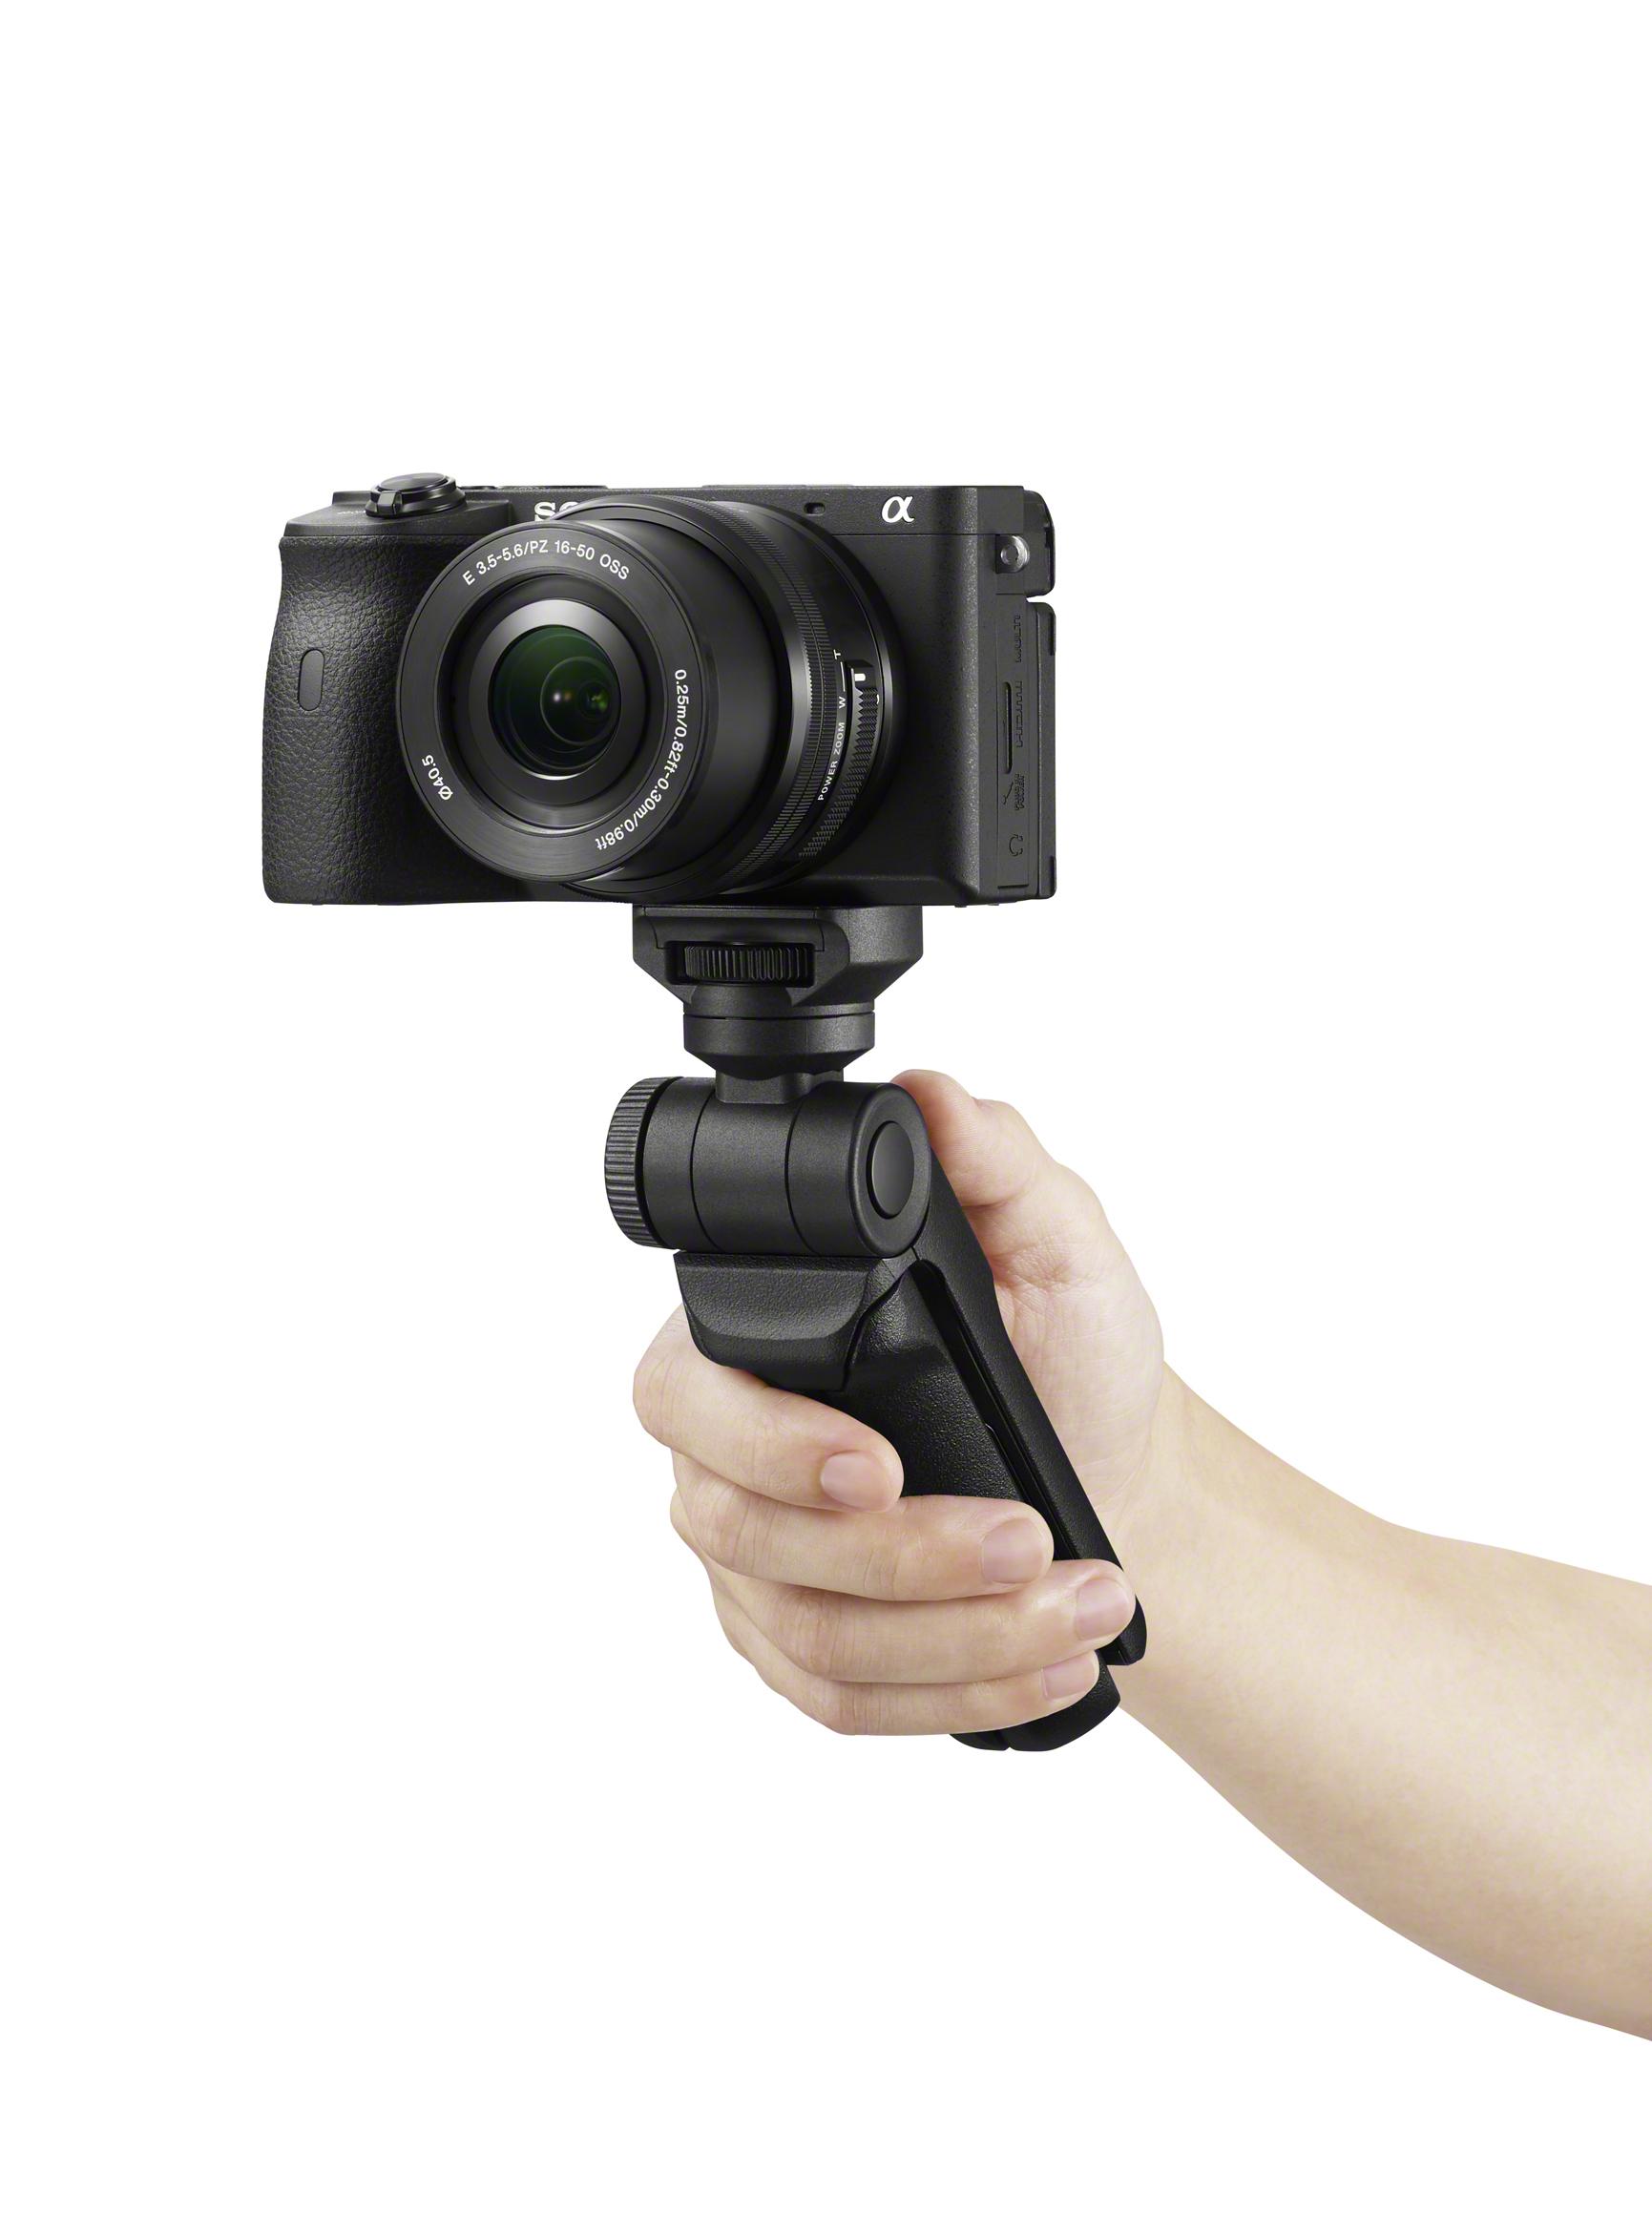 Vlogカメラはソニーの天下では。Bluetooth対応でケーブルレスな